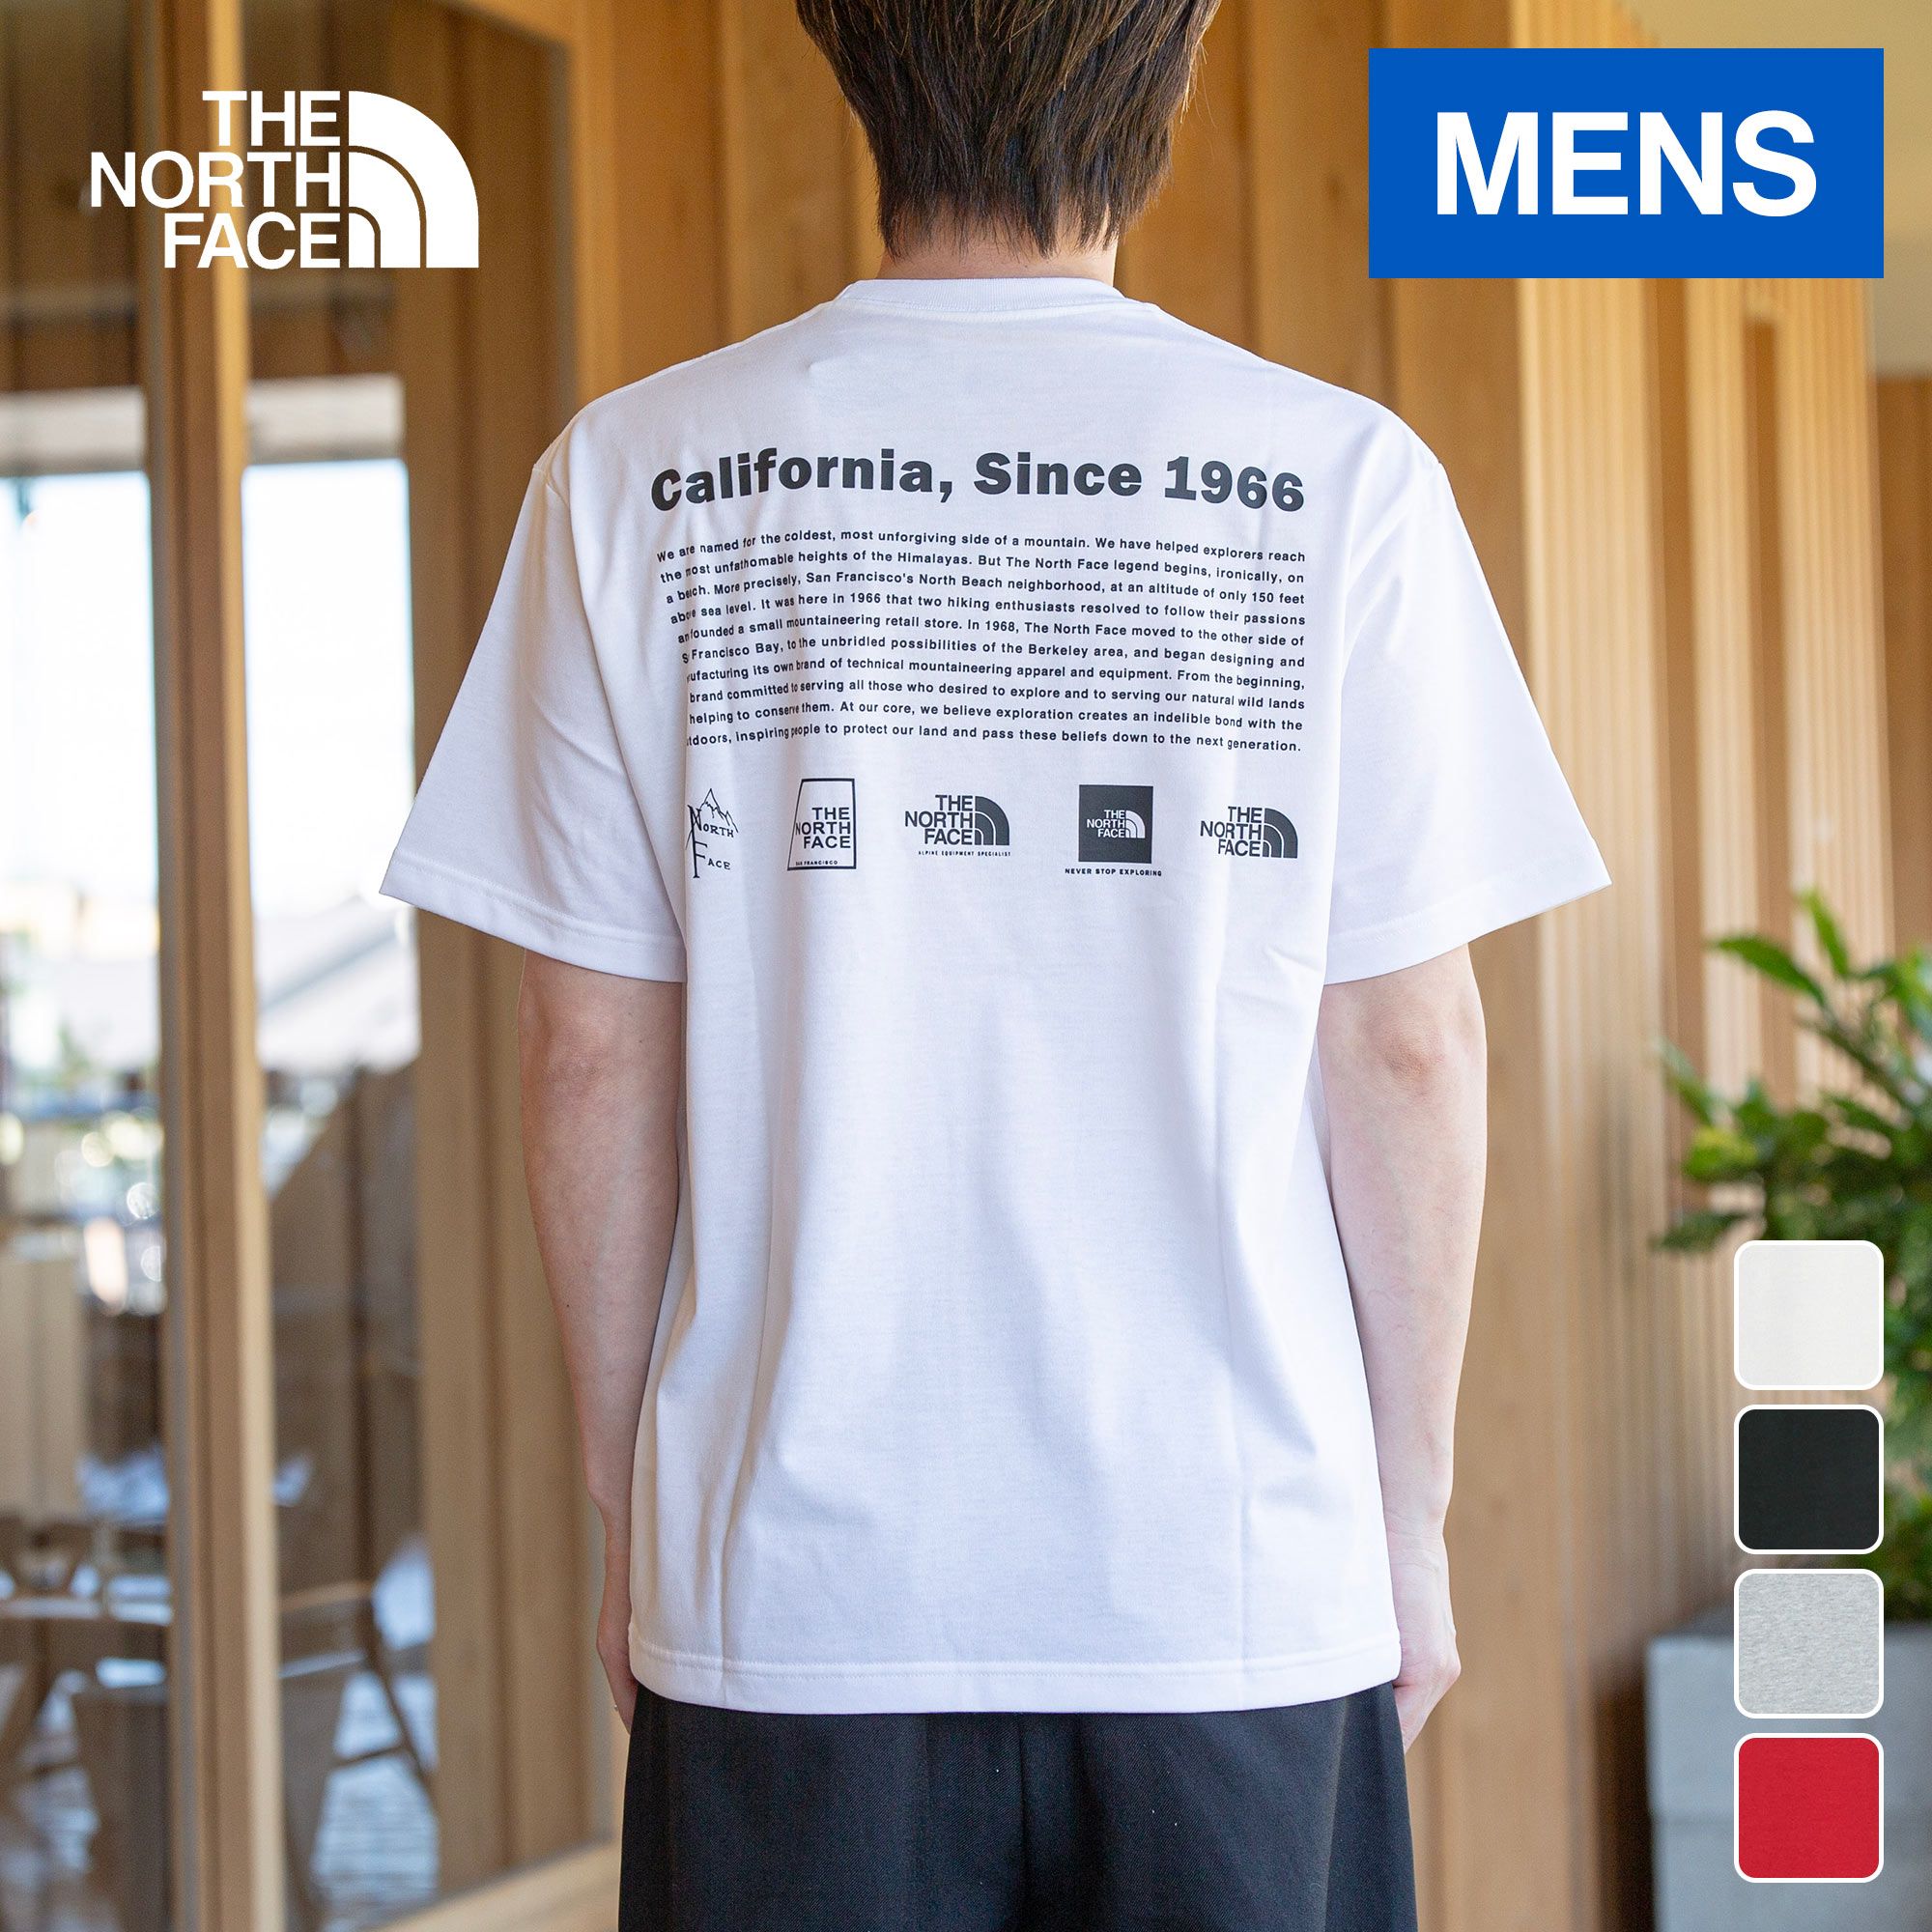 ザ・ノース・フェイス ノースフェイス メンズ 半袖Tシャツ ショートスリーブヒストリカルロゴティー S/S Historical Logo Tee ホワイト/ブラック/アイアンレッド/ミックスグレー NT32407